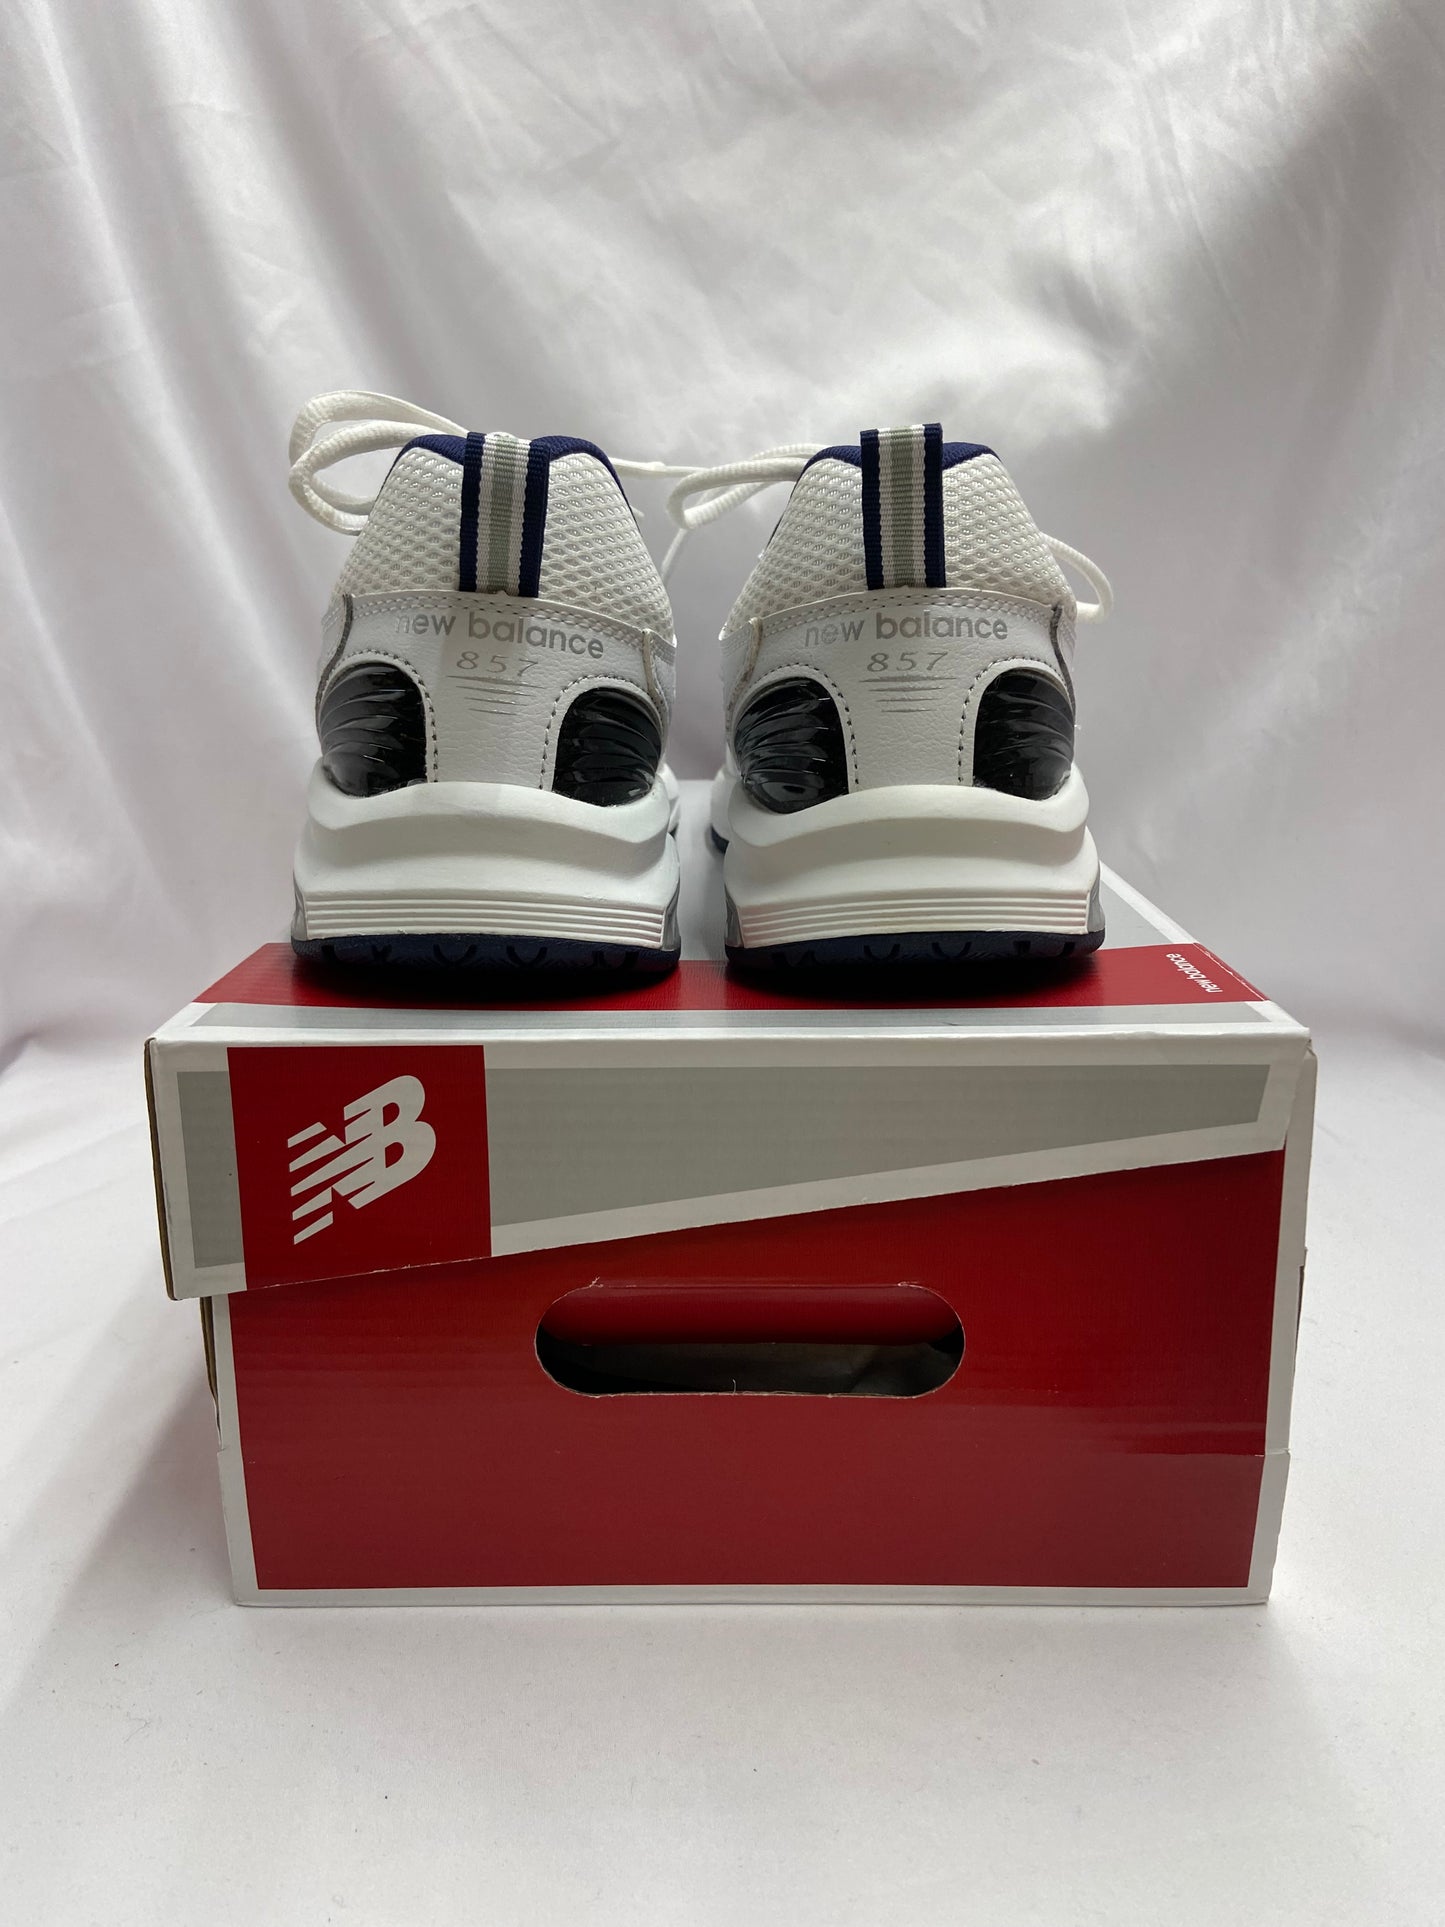 New Balance Style 857 Size 10.5 Medium White Trainer NWOT Athletic Shoe